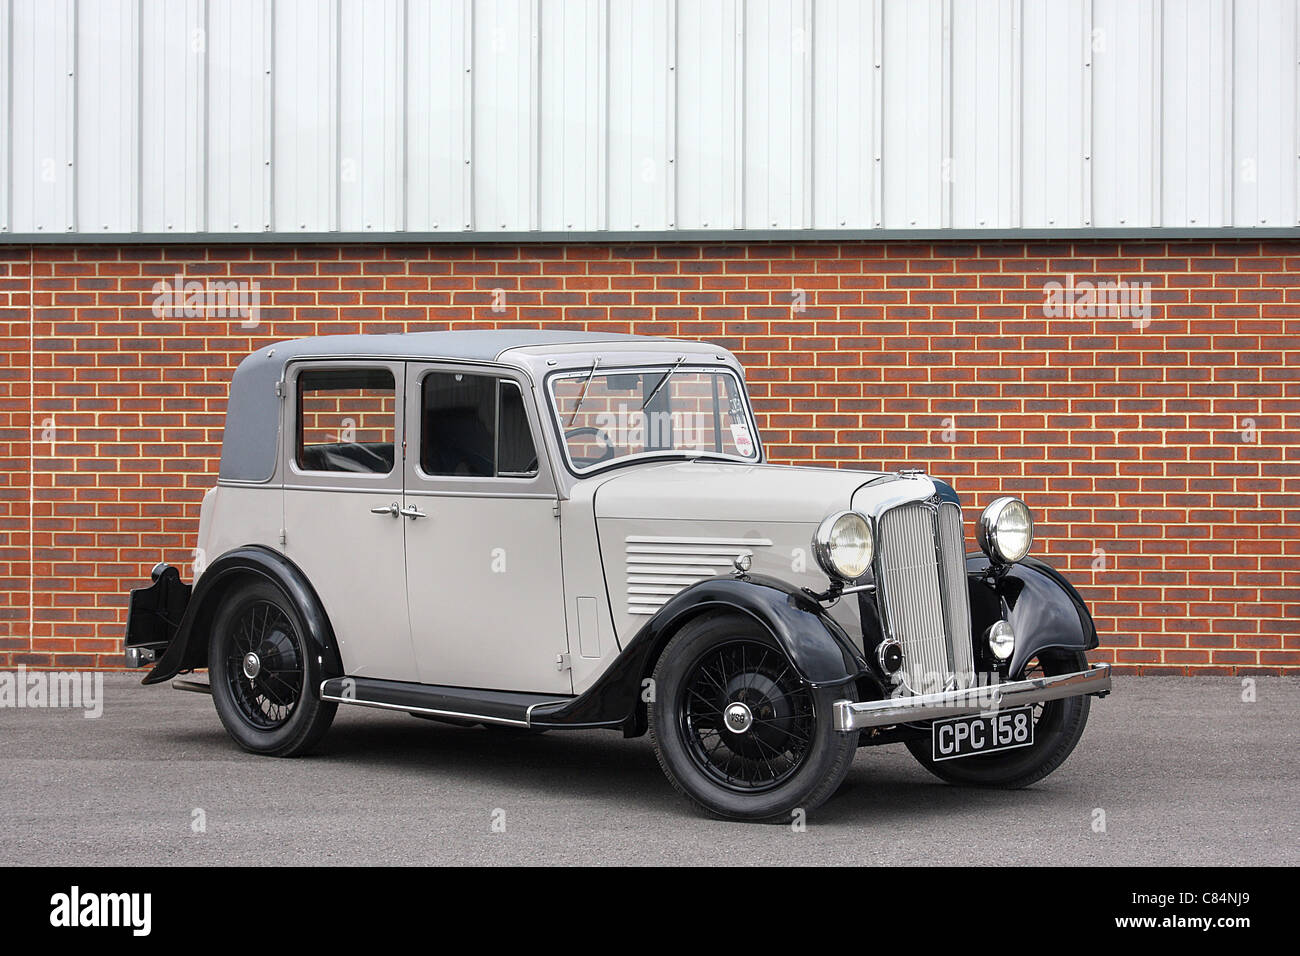 BSA sechs Licht, britische Limousine von 1935, weniger als 5 bleiben, ähnlich wie die Lanchester Licht sechs von der gleichen Firma produziert Stockfoto